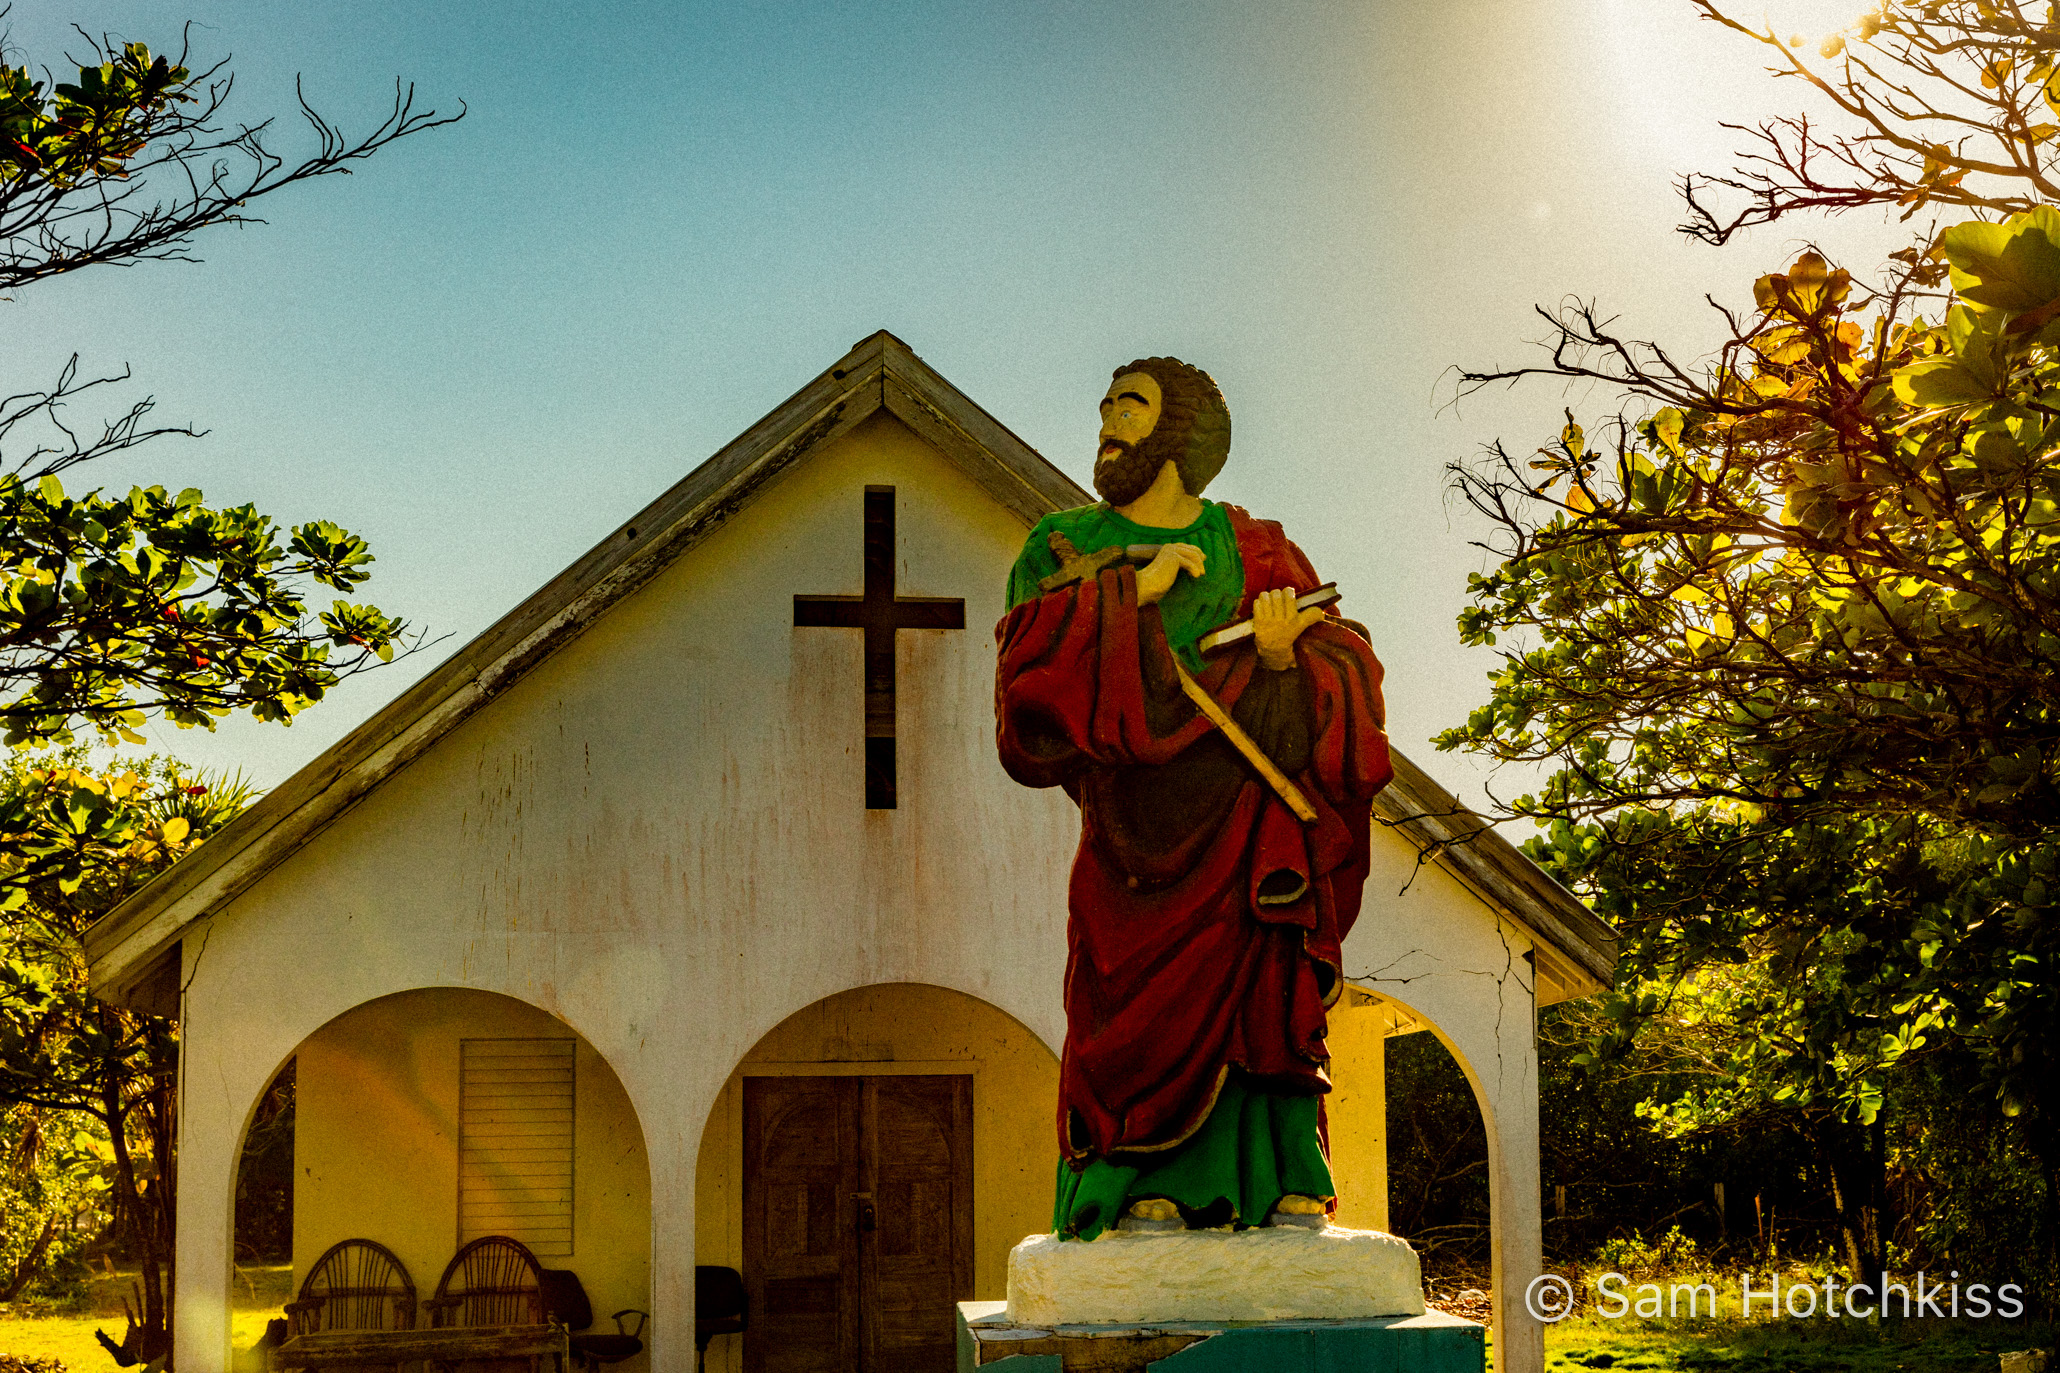 Church in San Pedro, Belize